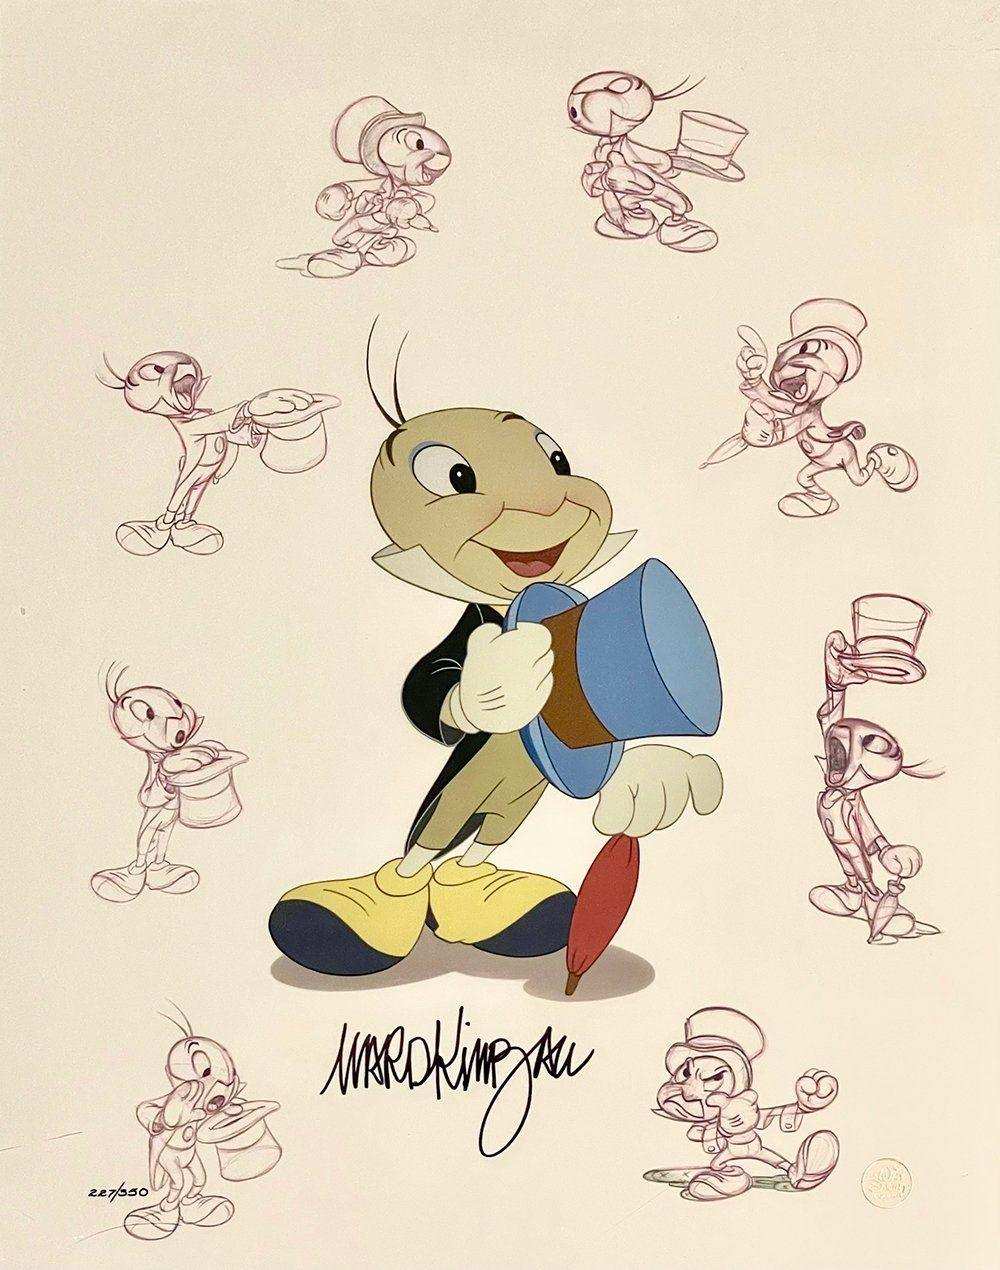 Jiminy Cricket Limited Edition signed by Ward Kimball - Choice Fine Art